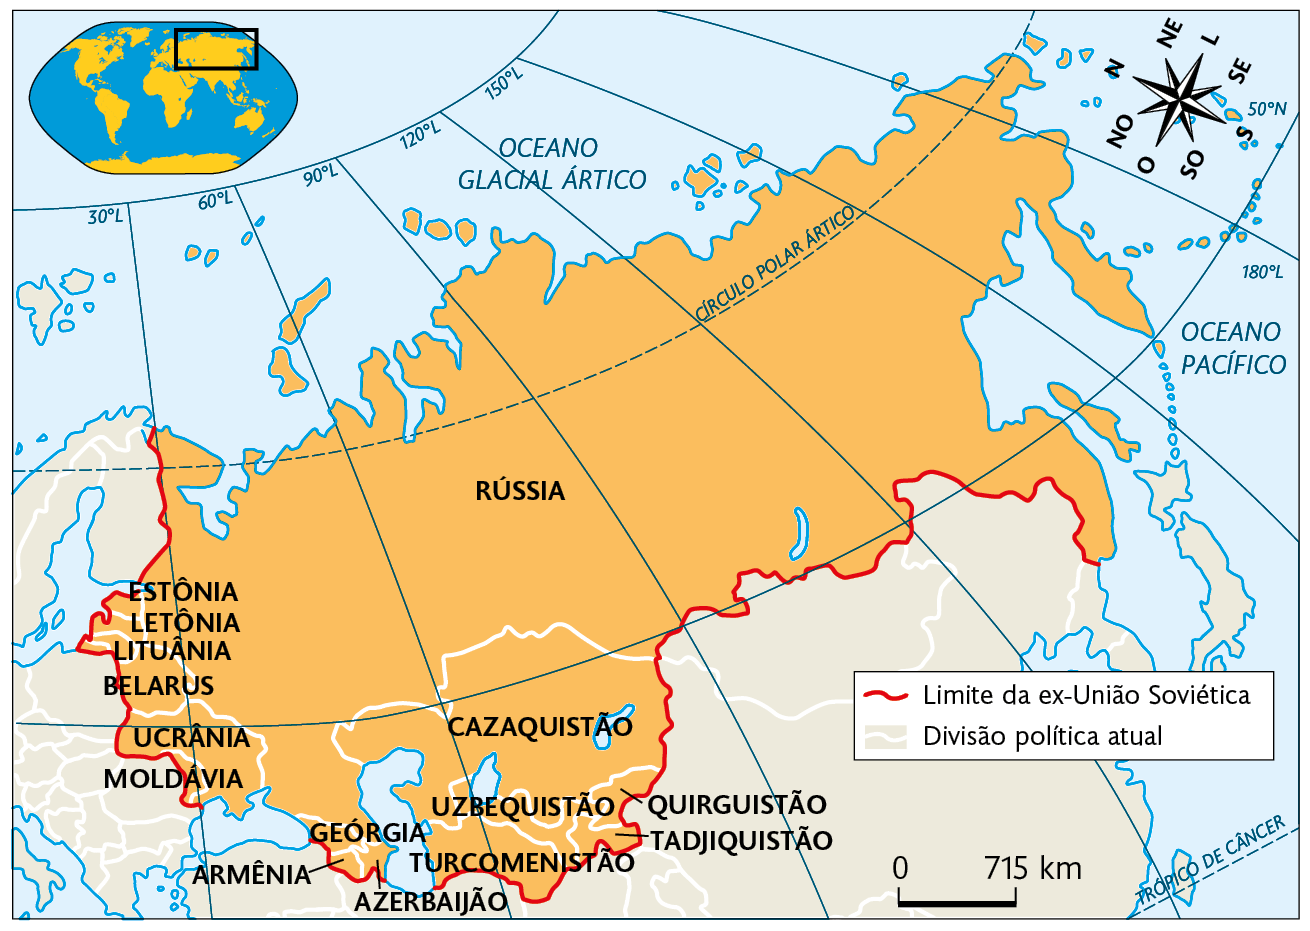 Mapa. Ex-União Soviética 1990. 
Limite da ex-União Soviética: abrangendo Estônia, Letônia, Lituânia, Belarus, Ucrânia, Moldávia, Geórgia, Armênia, Azerbaijão, Turcomenistão, Uzbequistão, Quirguistão, Tadjiquistão, Cazaquistão e Rússia. No canto superior esquerdo, mapa de localização, planisfério destacando a região descrita. No canto superior direito, a rosa dos ventos e na parte inferior, a escala: 715 quilômetros por centímetro.